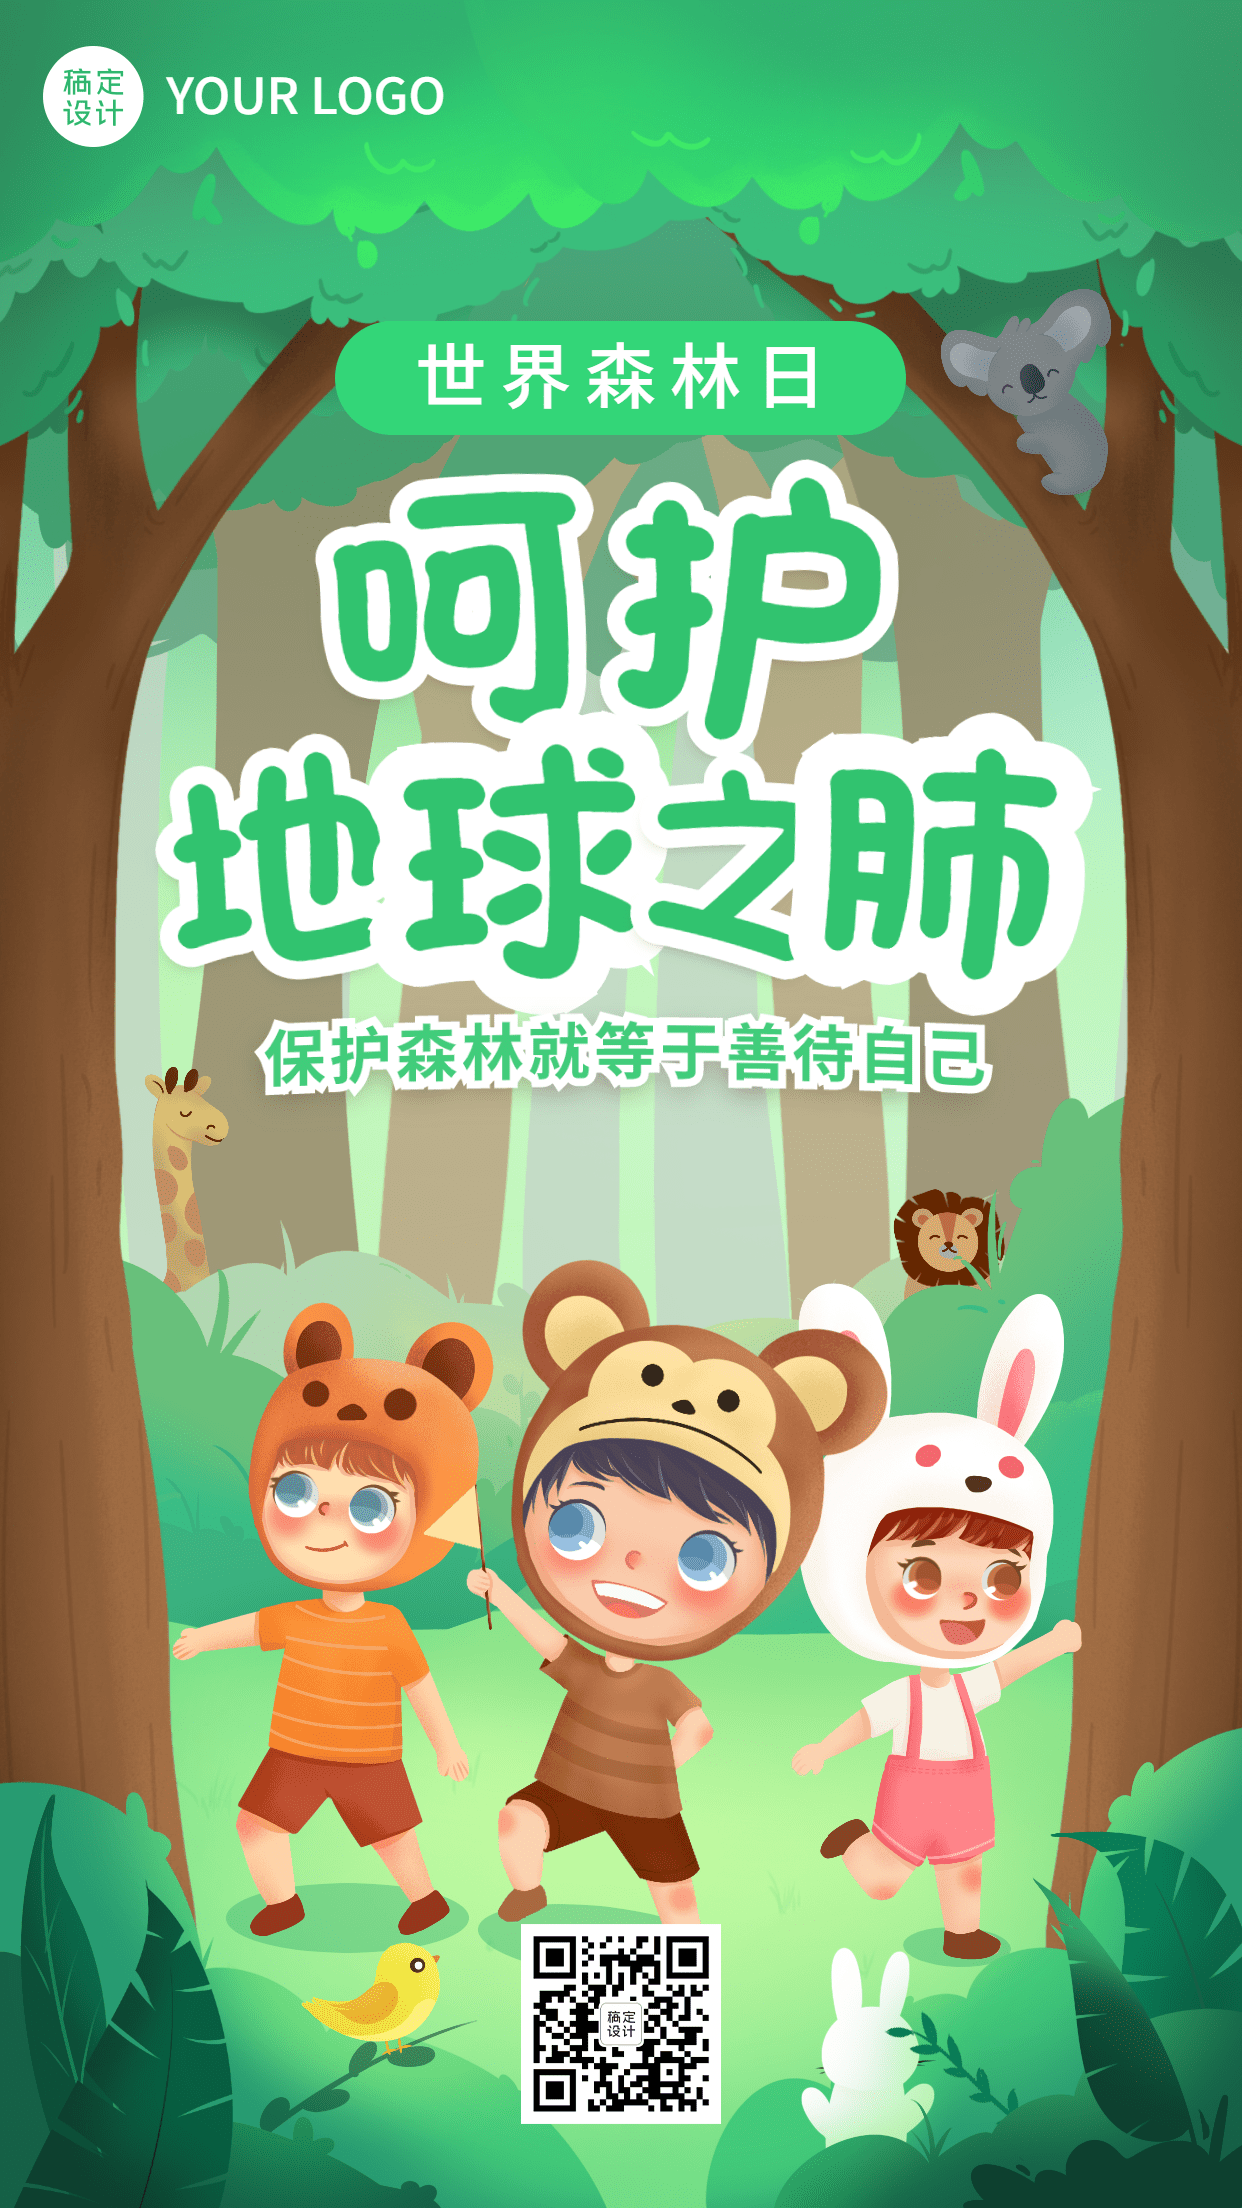 3.21世界森林日节日宣传手机海报预览效果